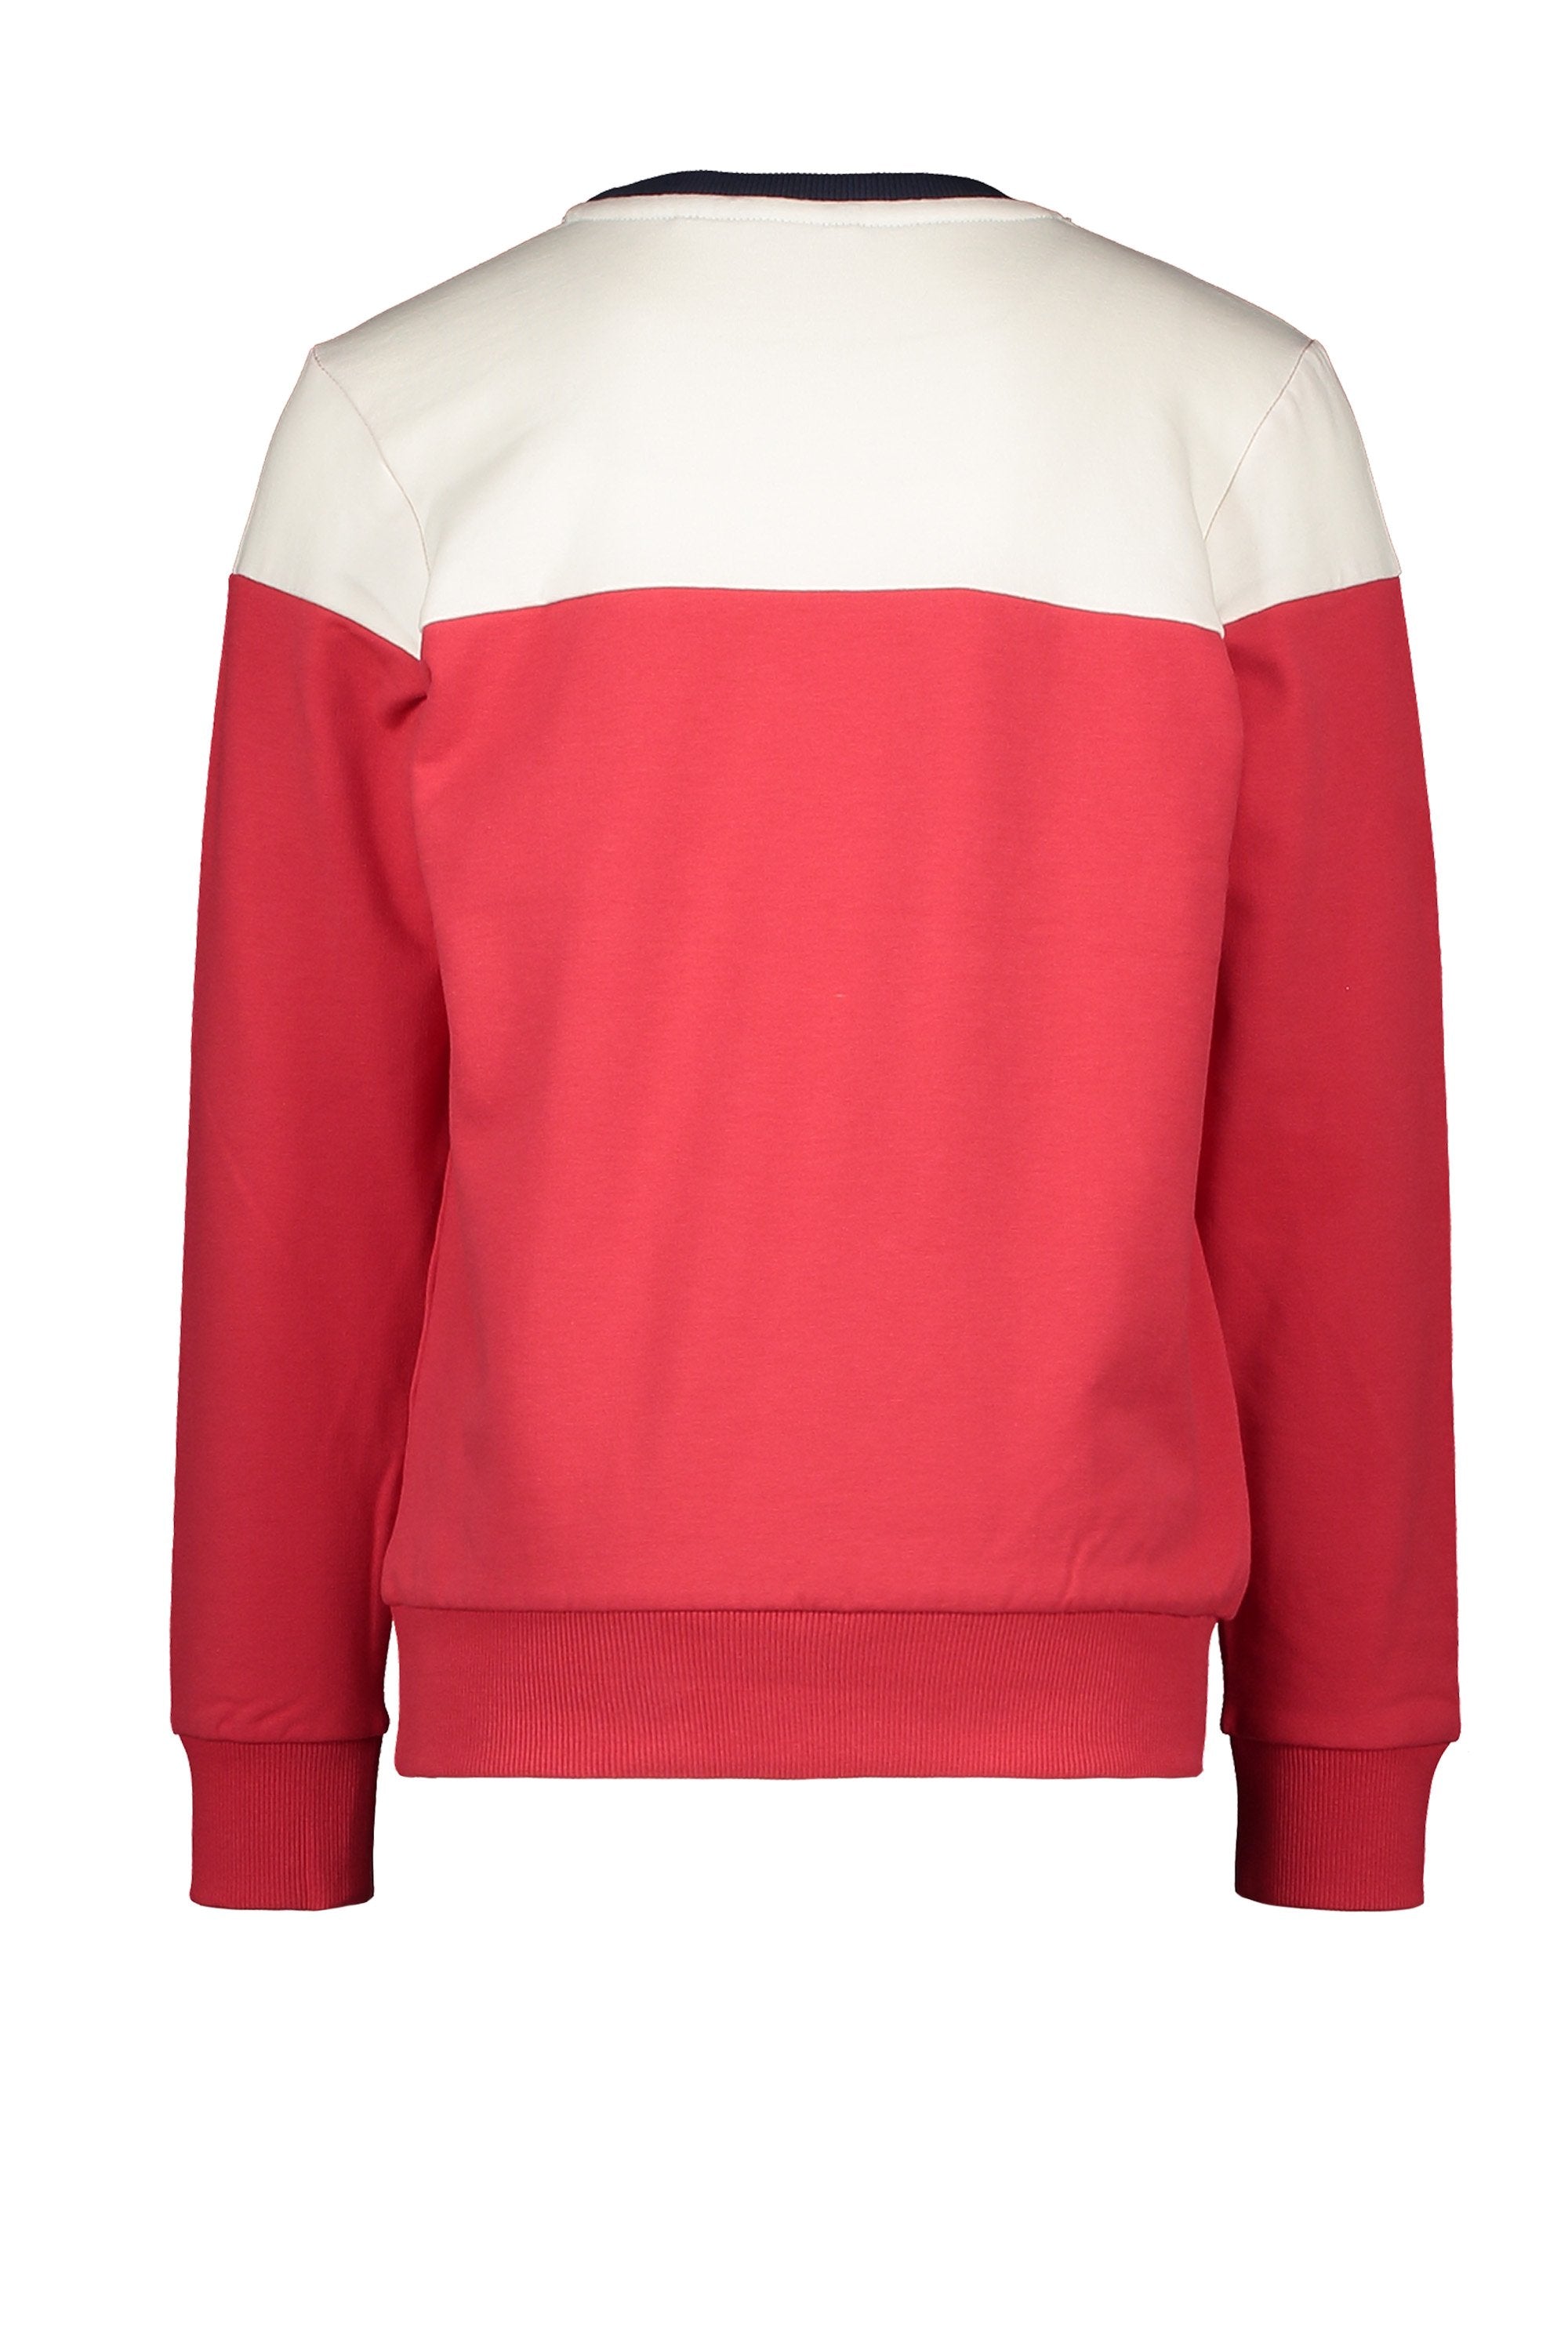 Jongens Sweater Cut&Sewn van Moodstreet in de kleur Red in maat 122/128.